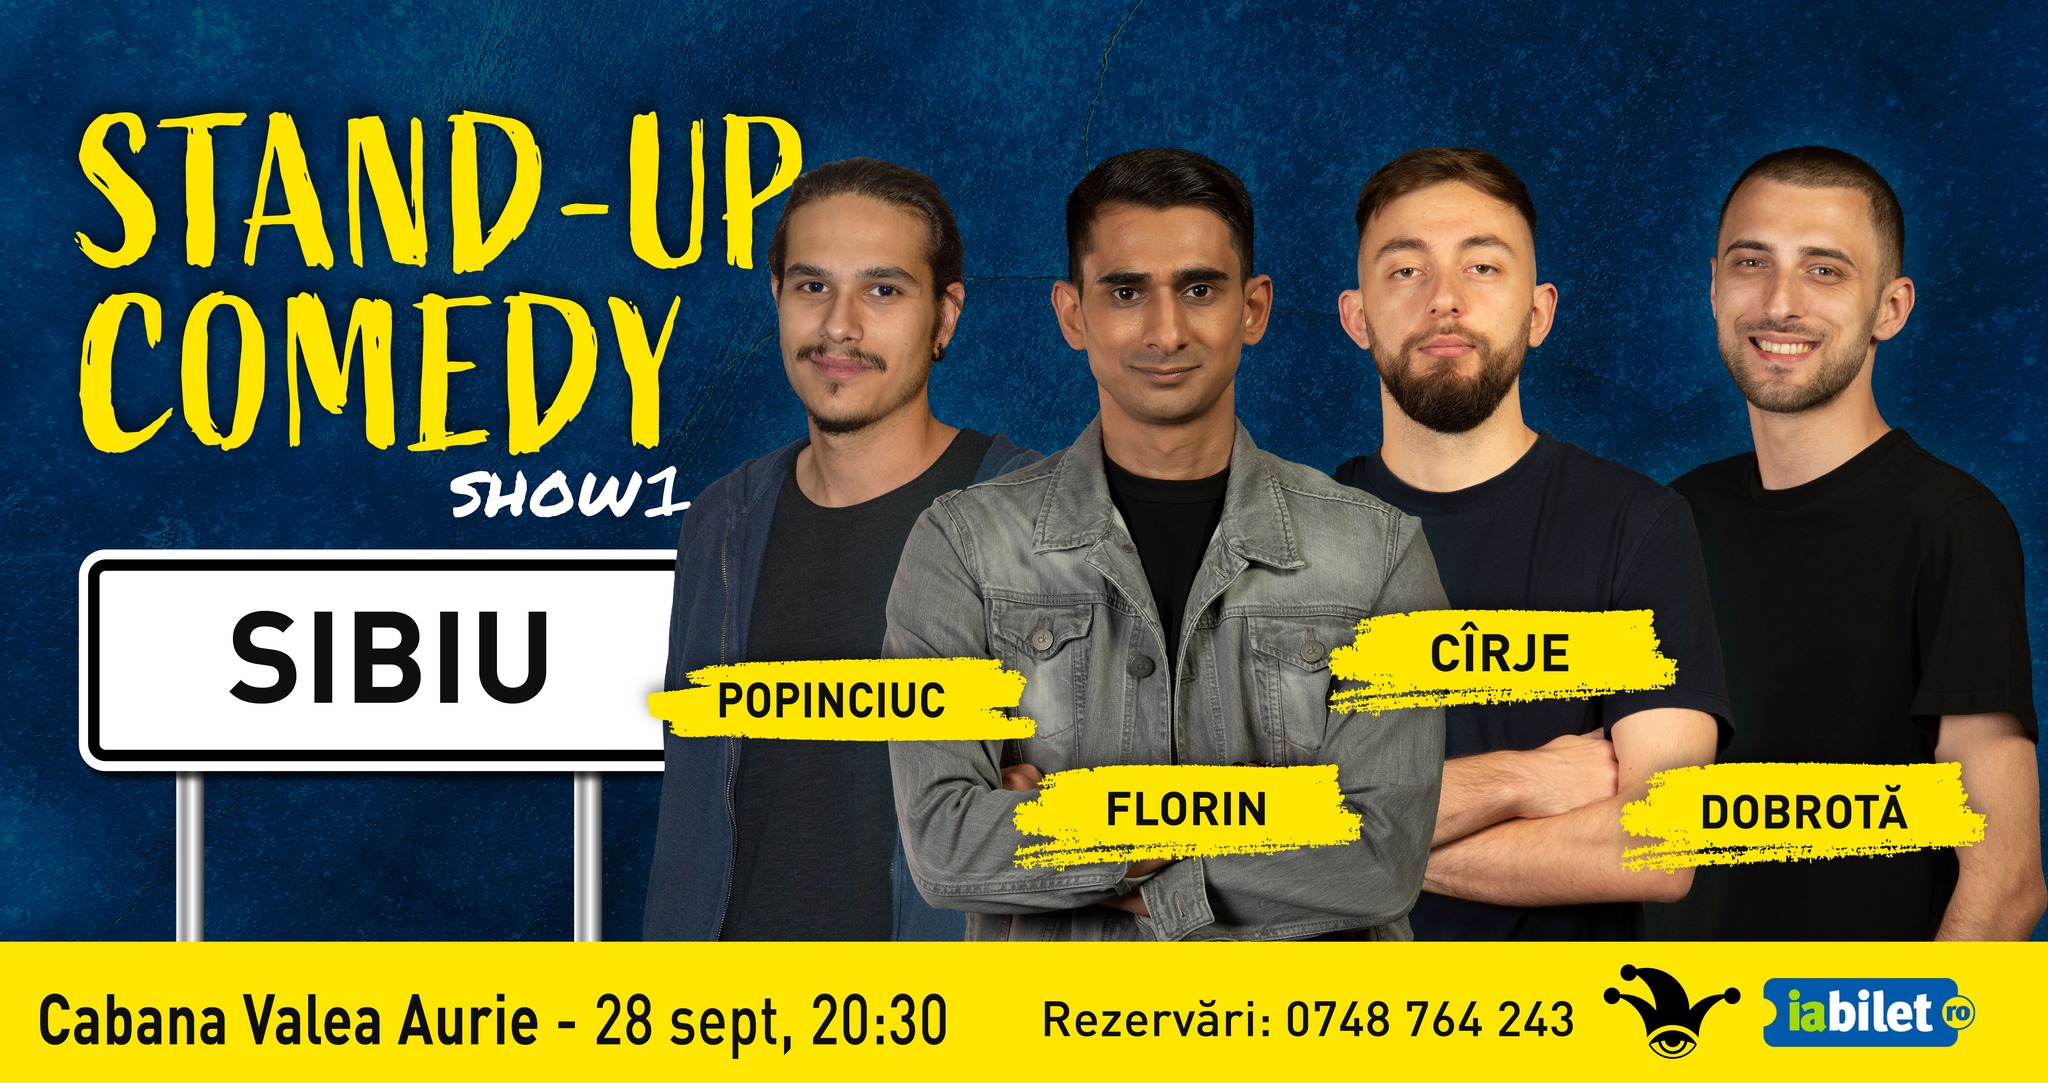 SHOW1 | SIBIU | Stand-up Comedy cu Cîrje, Florin, Dobrotă și Popinciuc